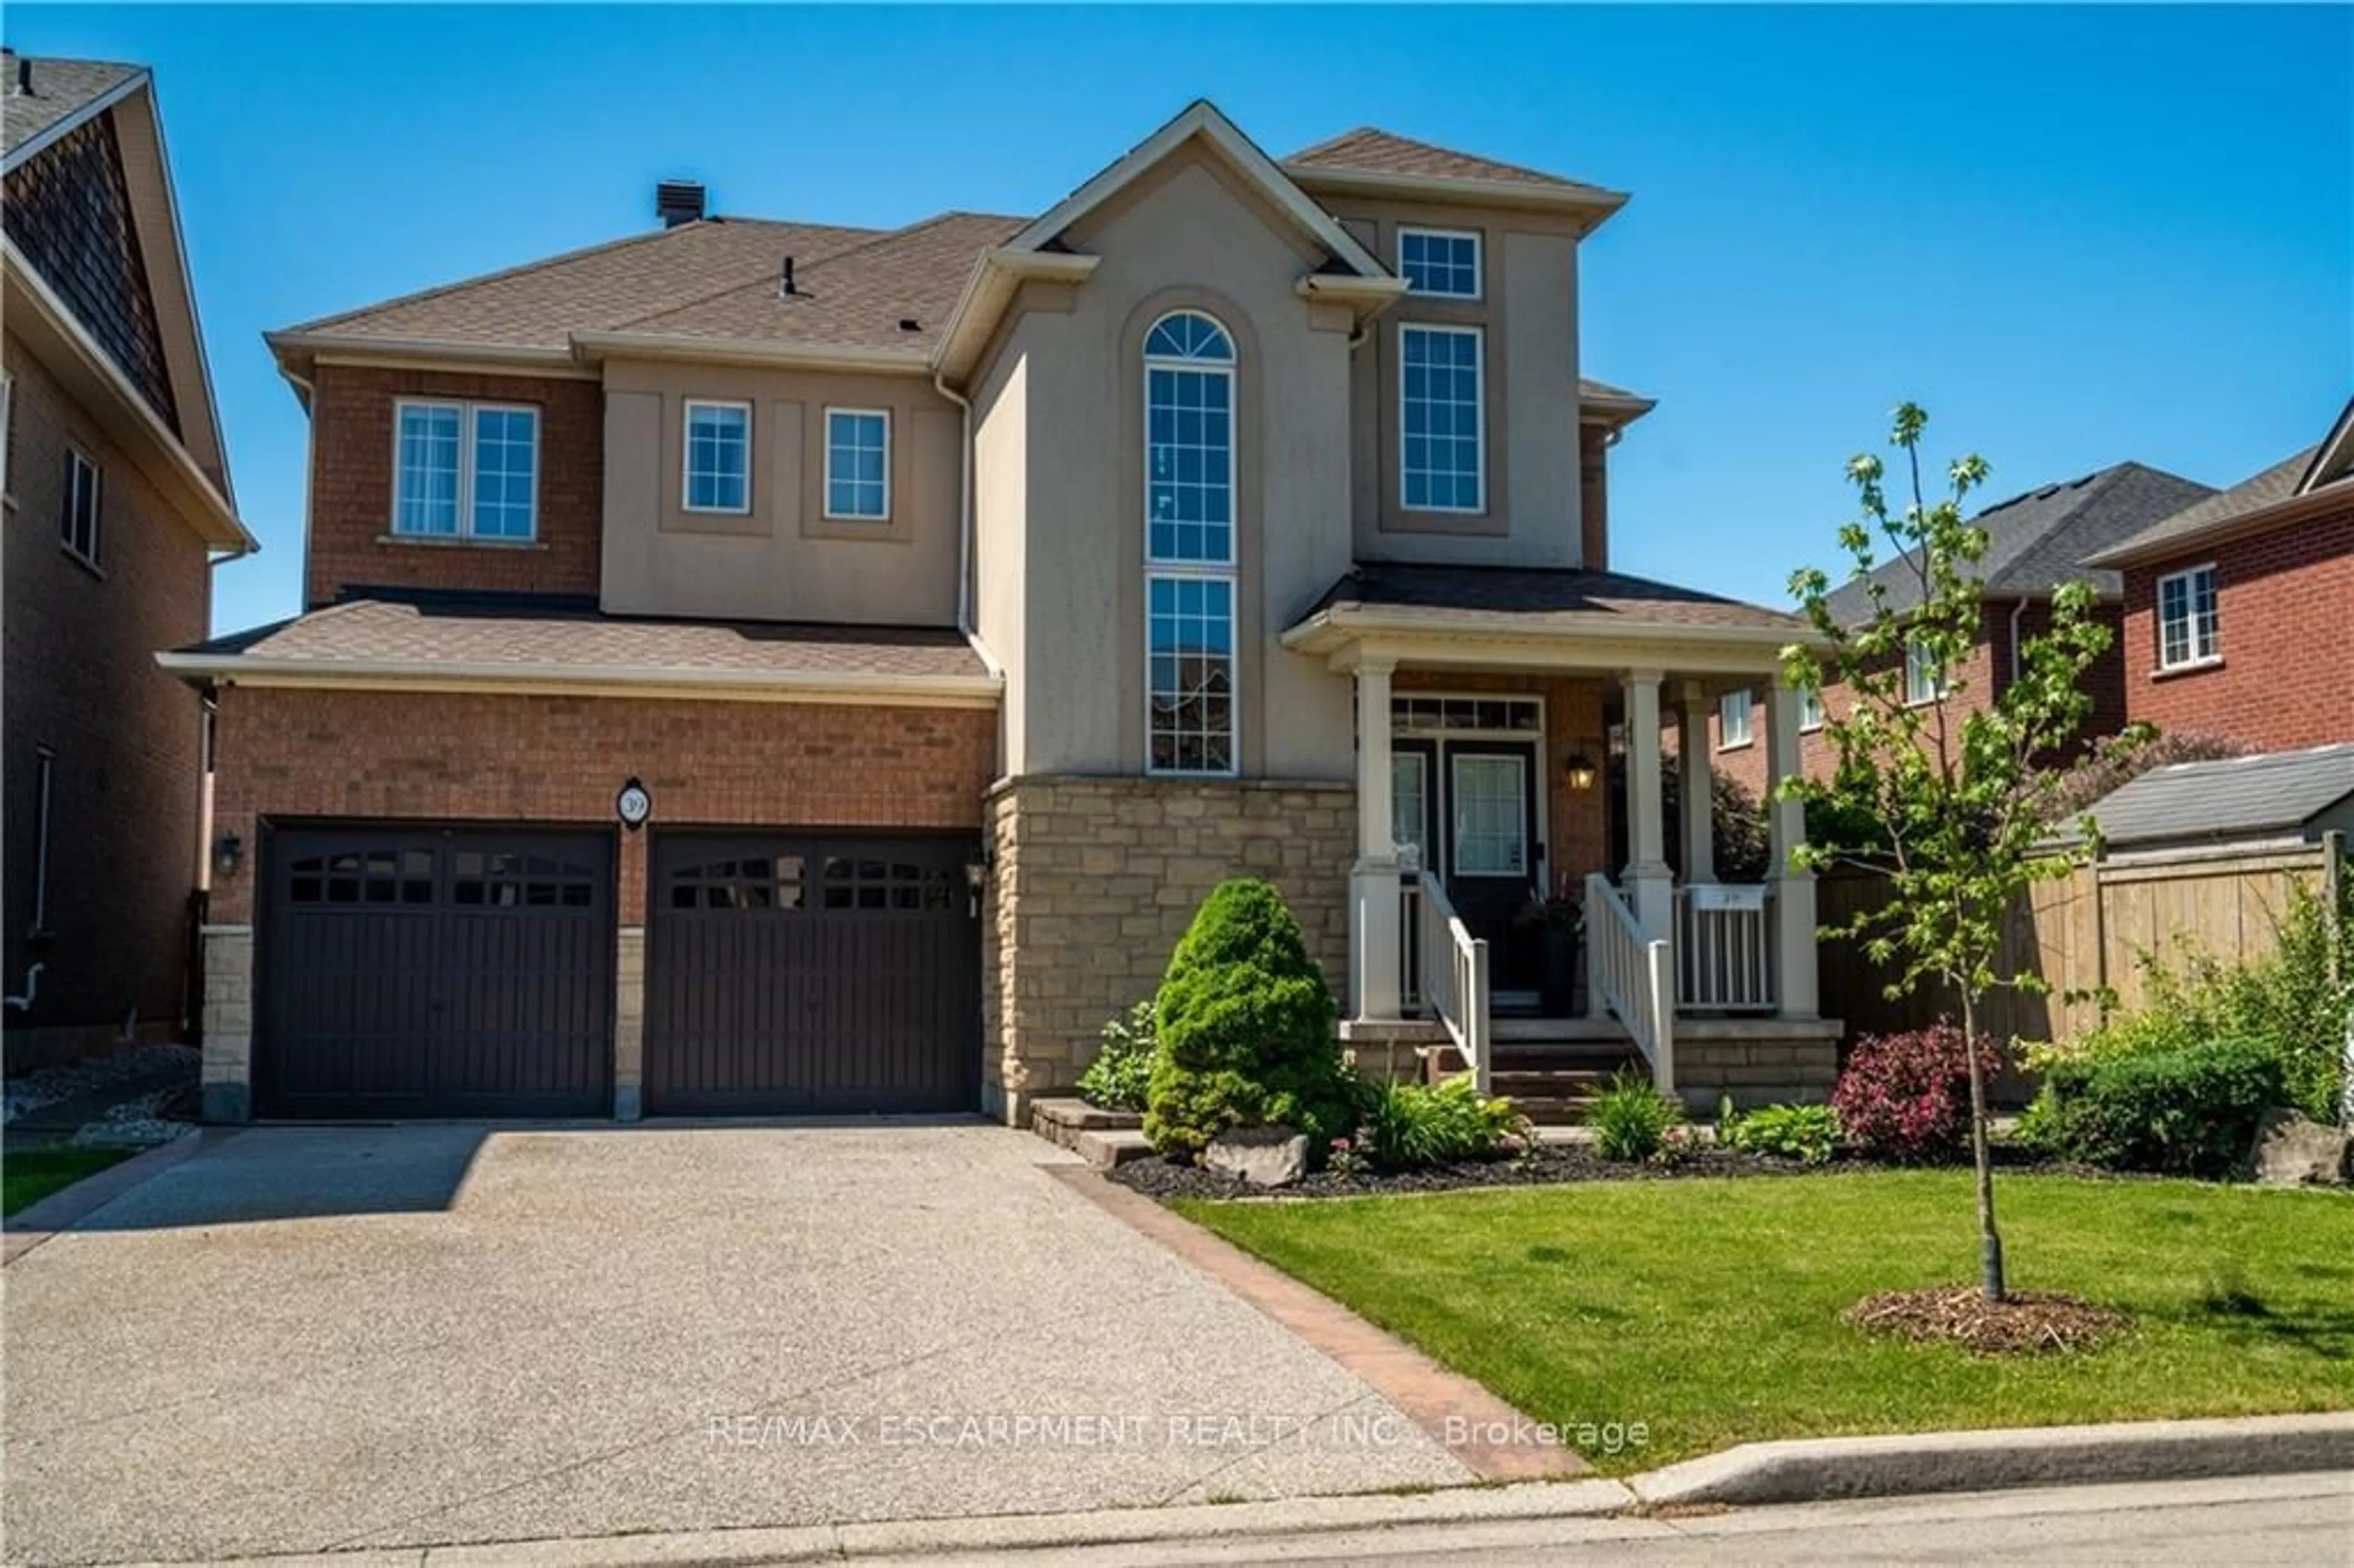 Home with brick exterior material for 39 Pebble Valley Ave, Hamilton Ontario L8E 6E9